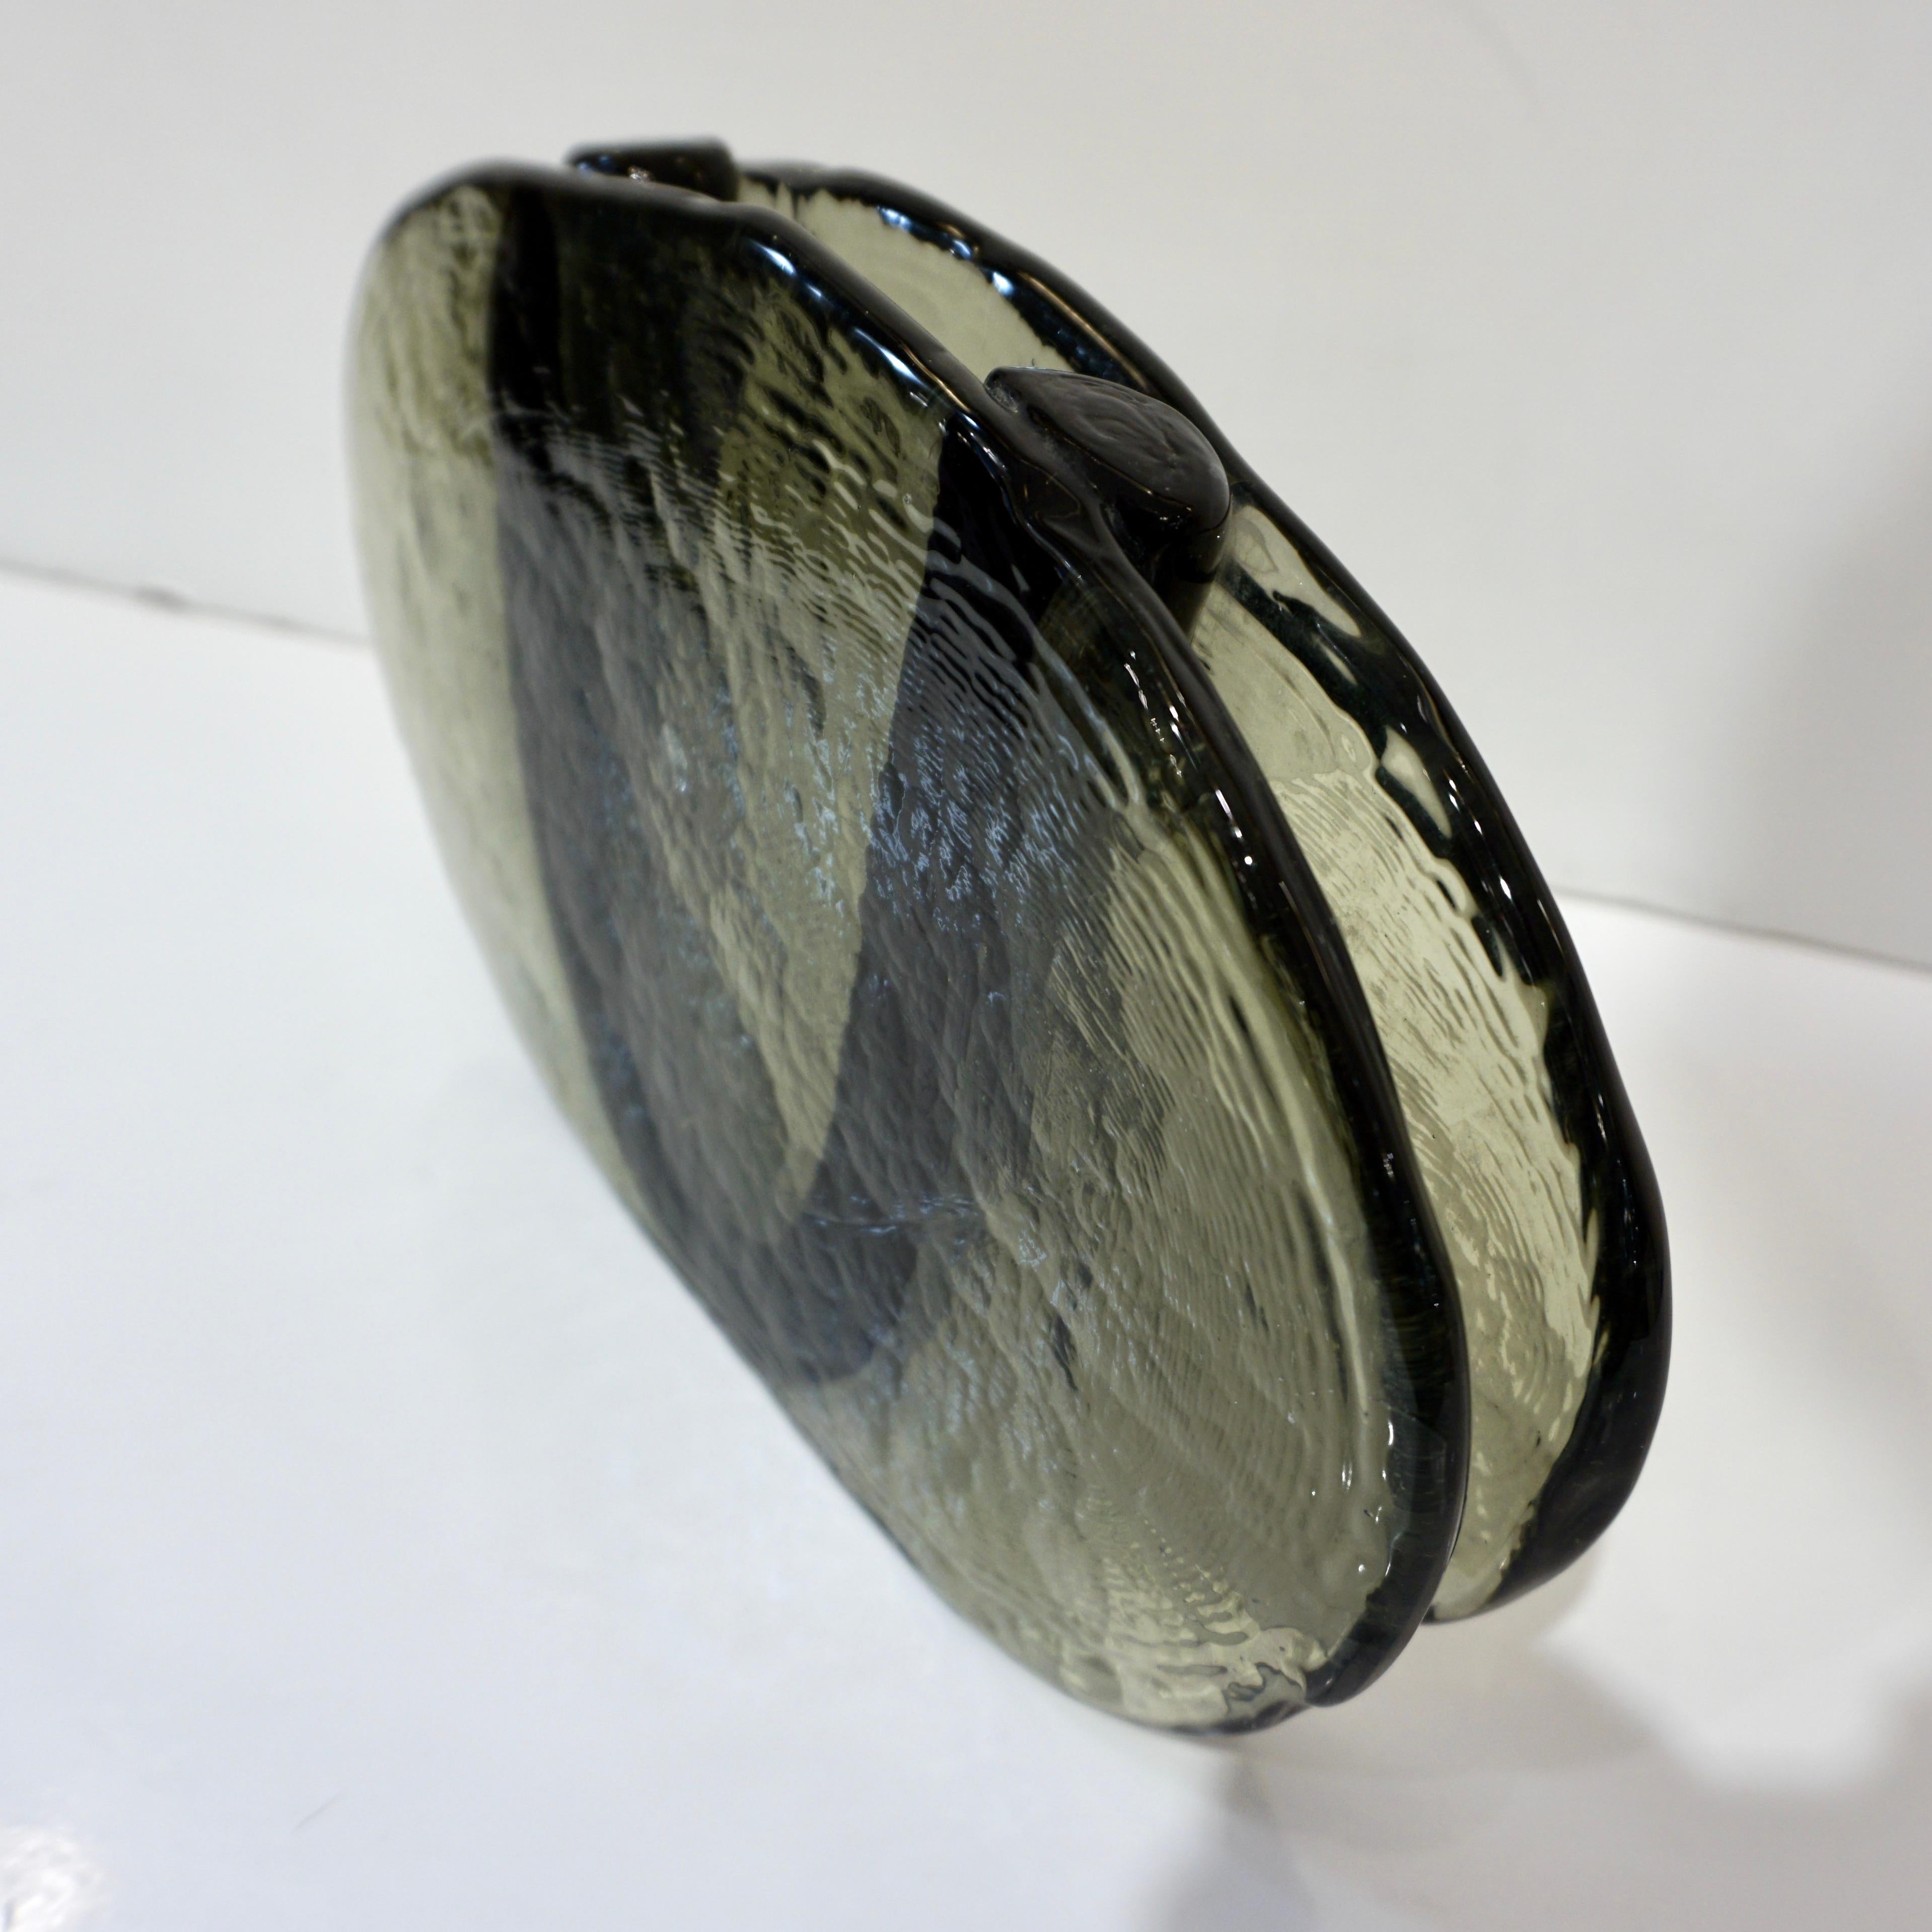 Vase à fleurs minimaliste des années 1970 en verre de Murano soufflé vert fumé, avec une légère texture martelée, un design moderne très innovant de forme ovale, la partie centrale pour les fleurs est entourée d'un U en verre massif noir tandis que